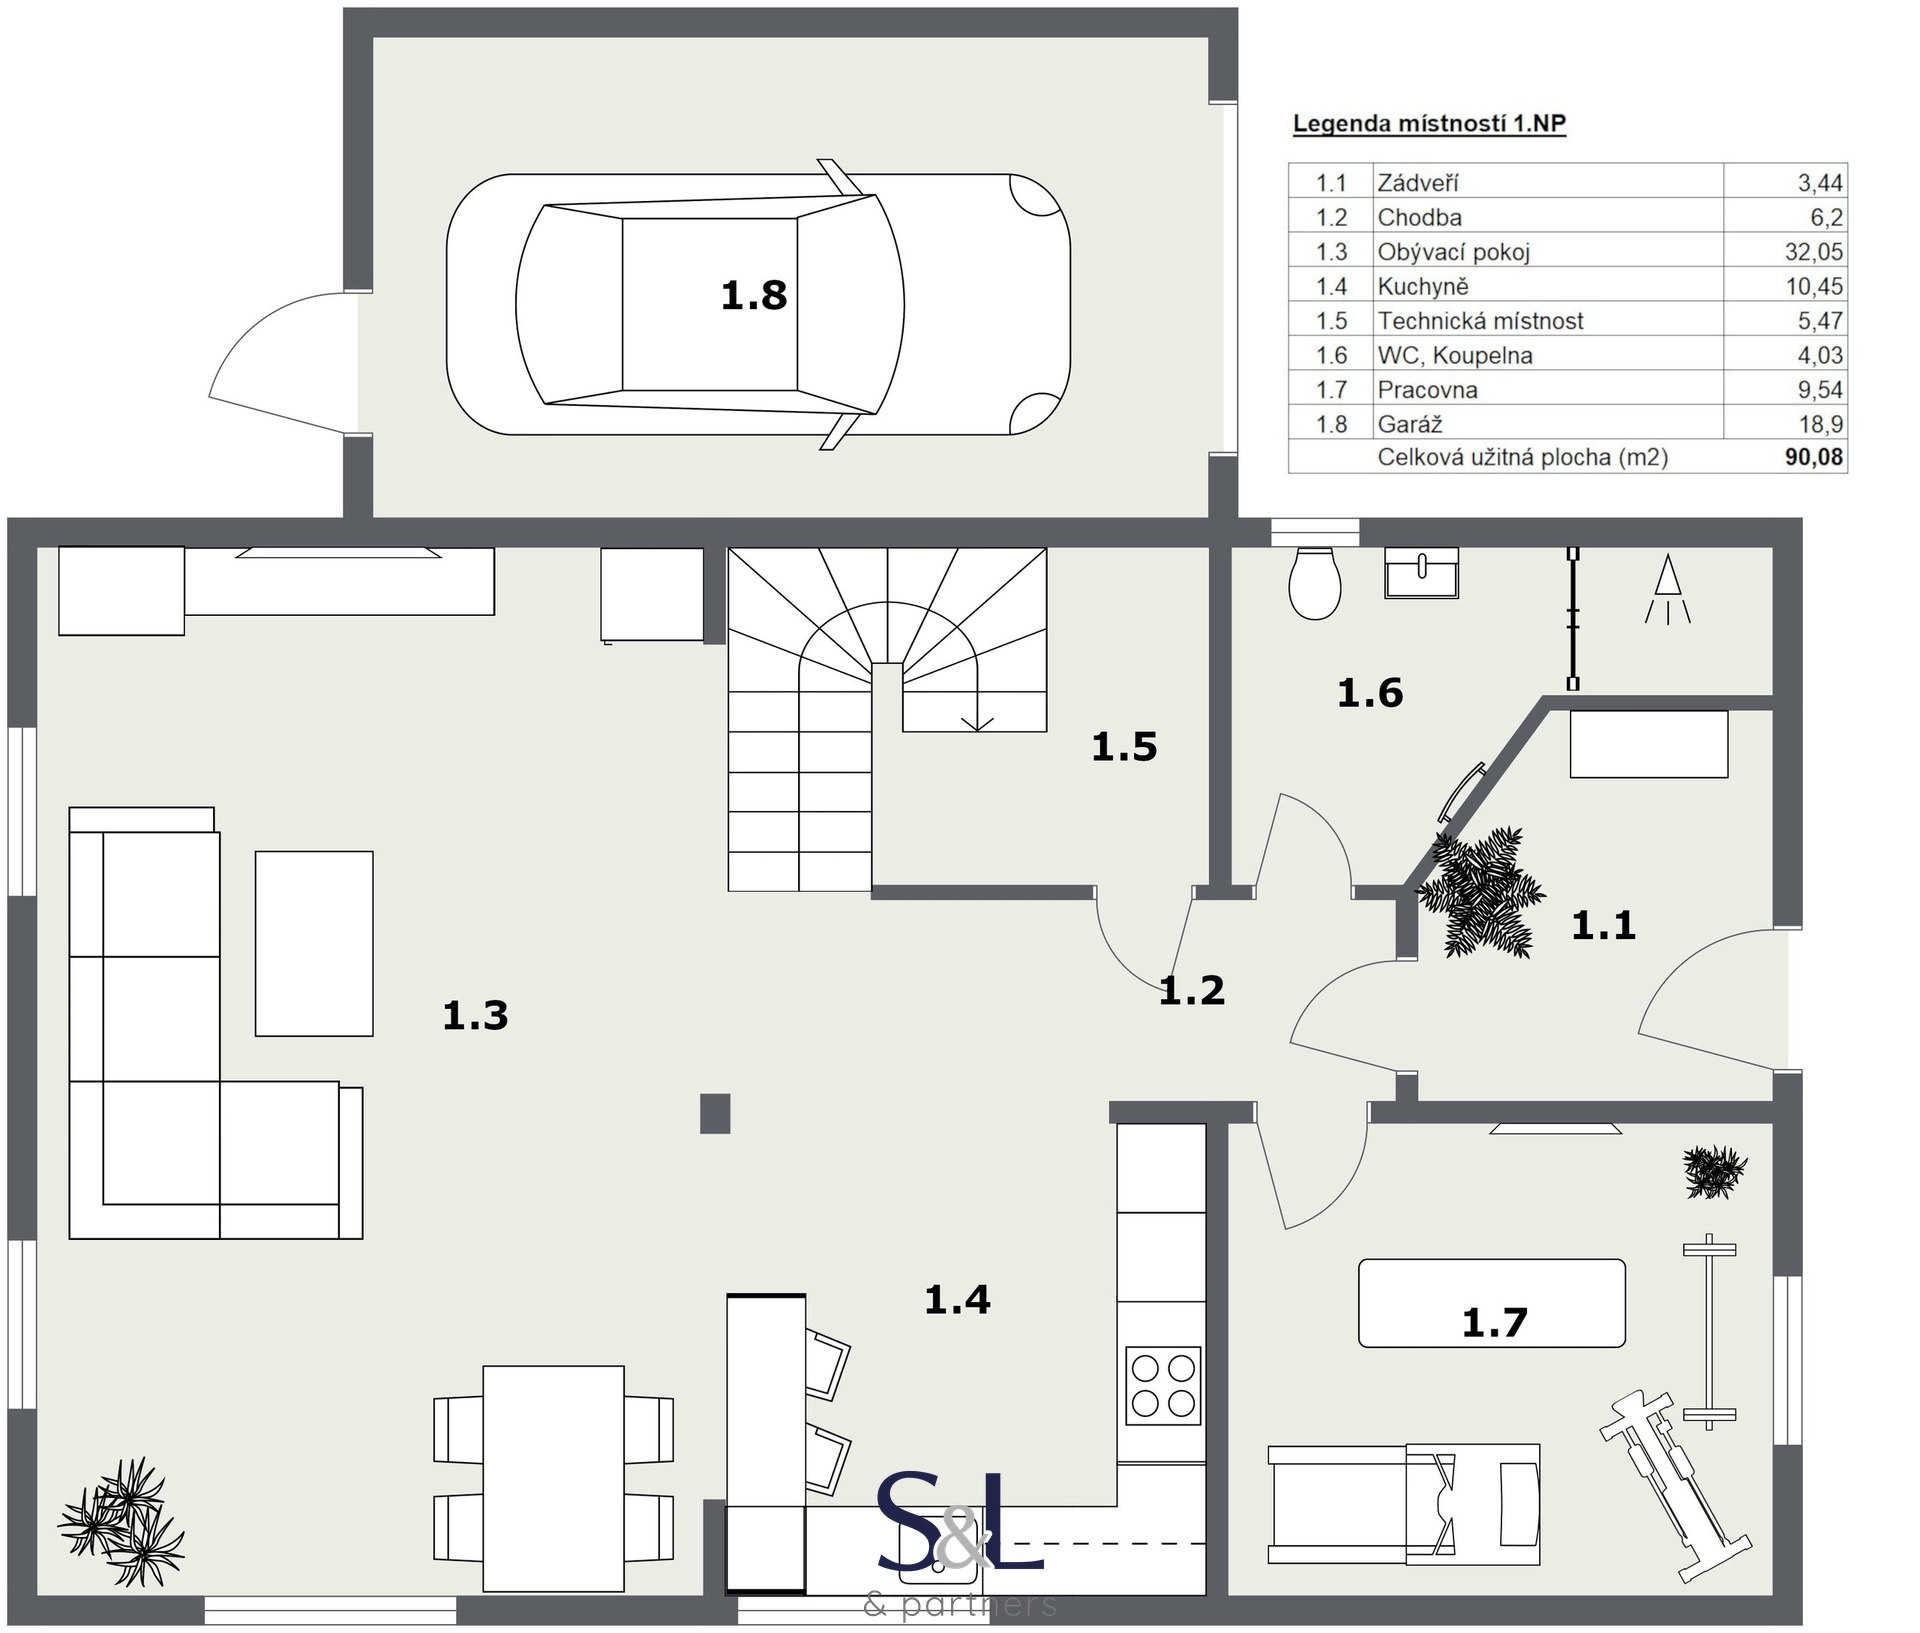 1. Floor - 2D Floor Plan